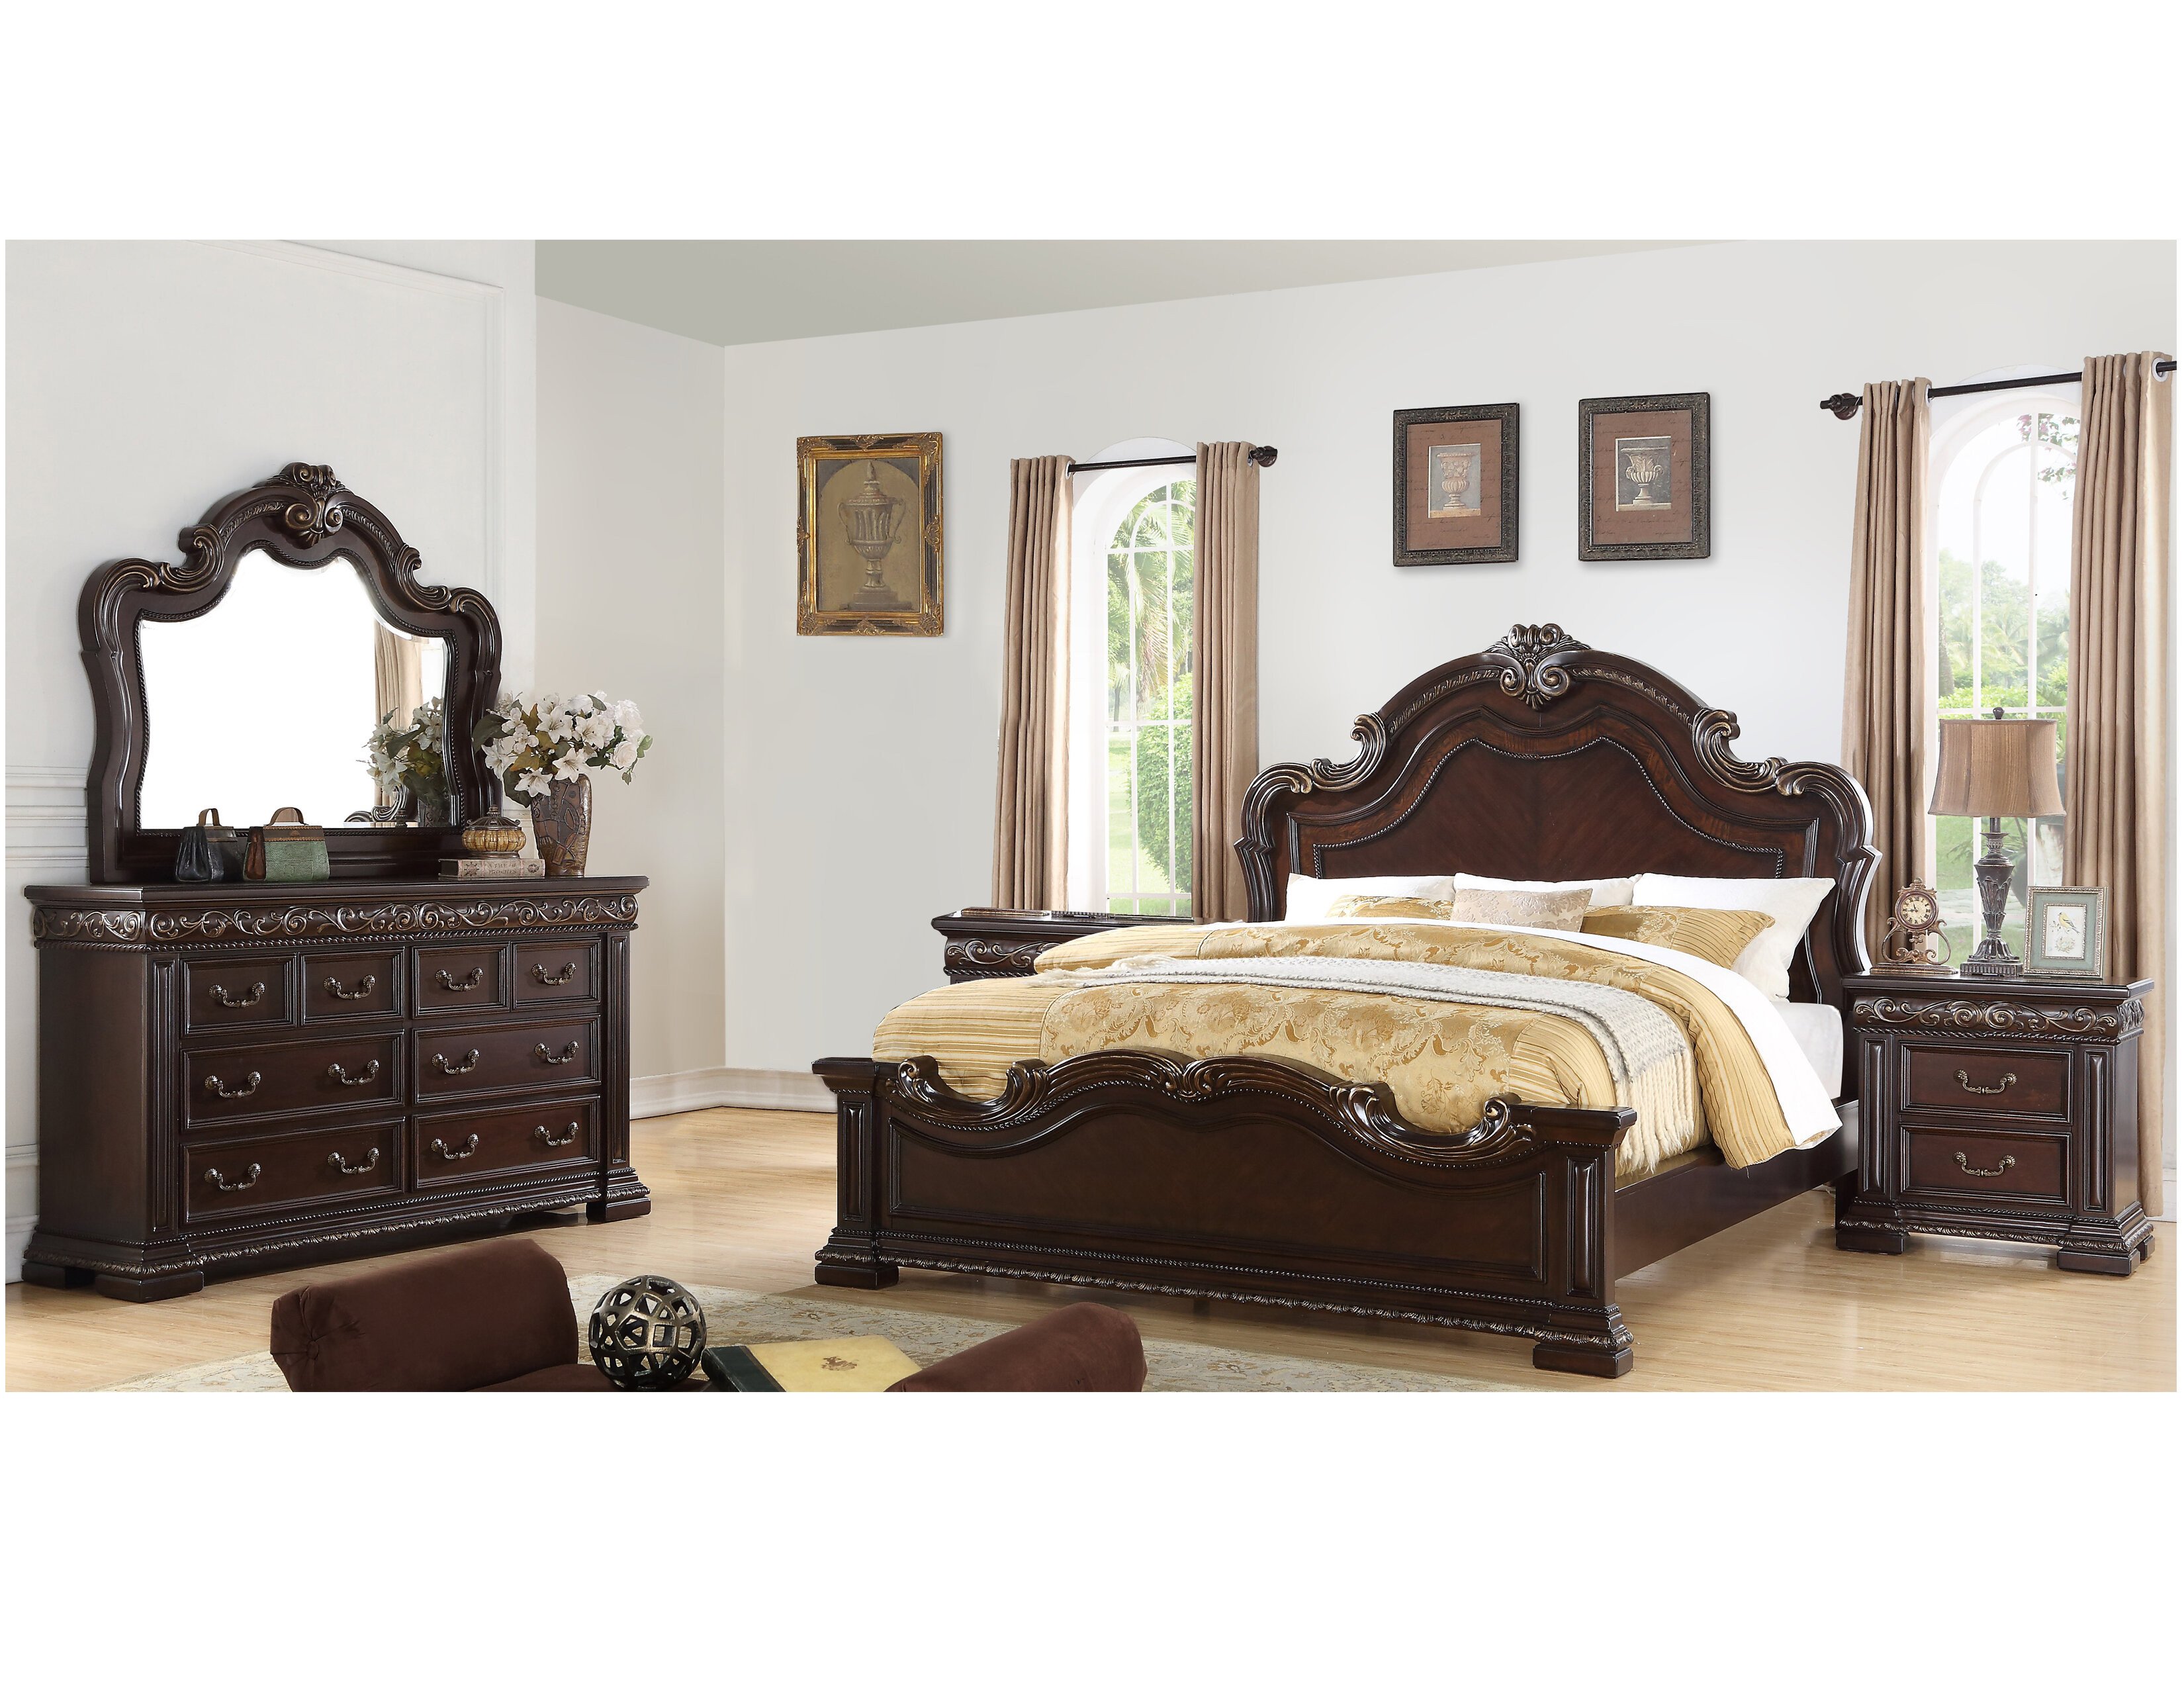 Solid Oak Bedroom Set Inspirational Bannruod Standard solid Wood 5 Piece Bedroom Set